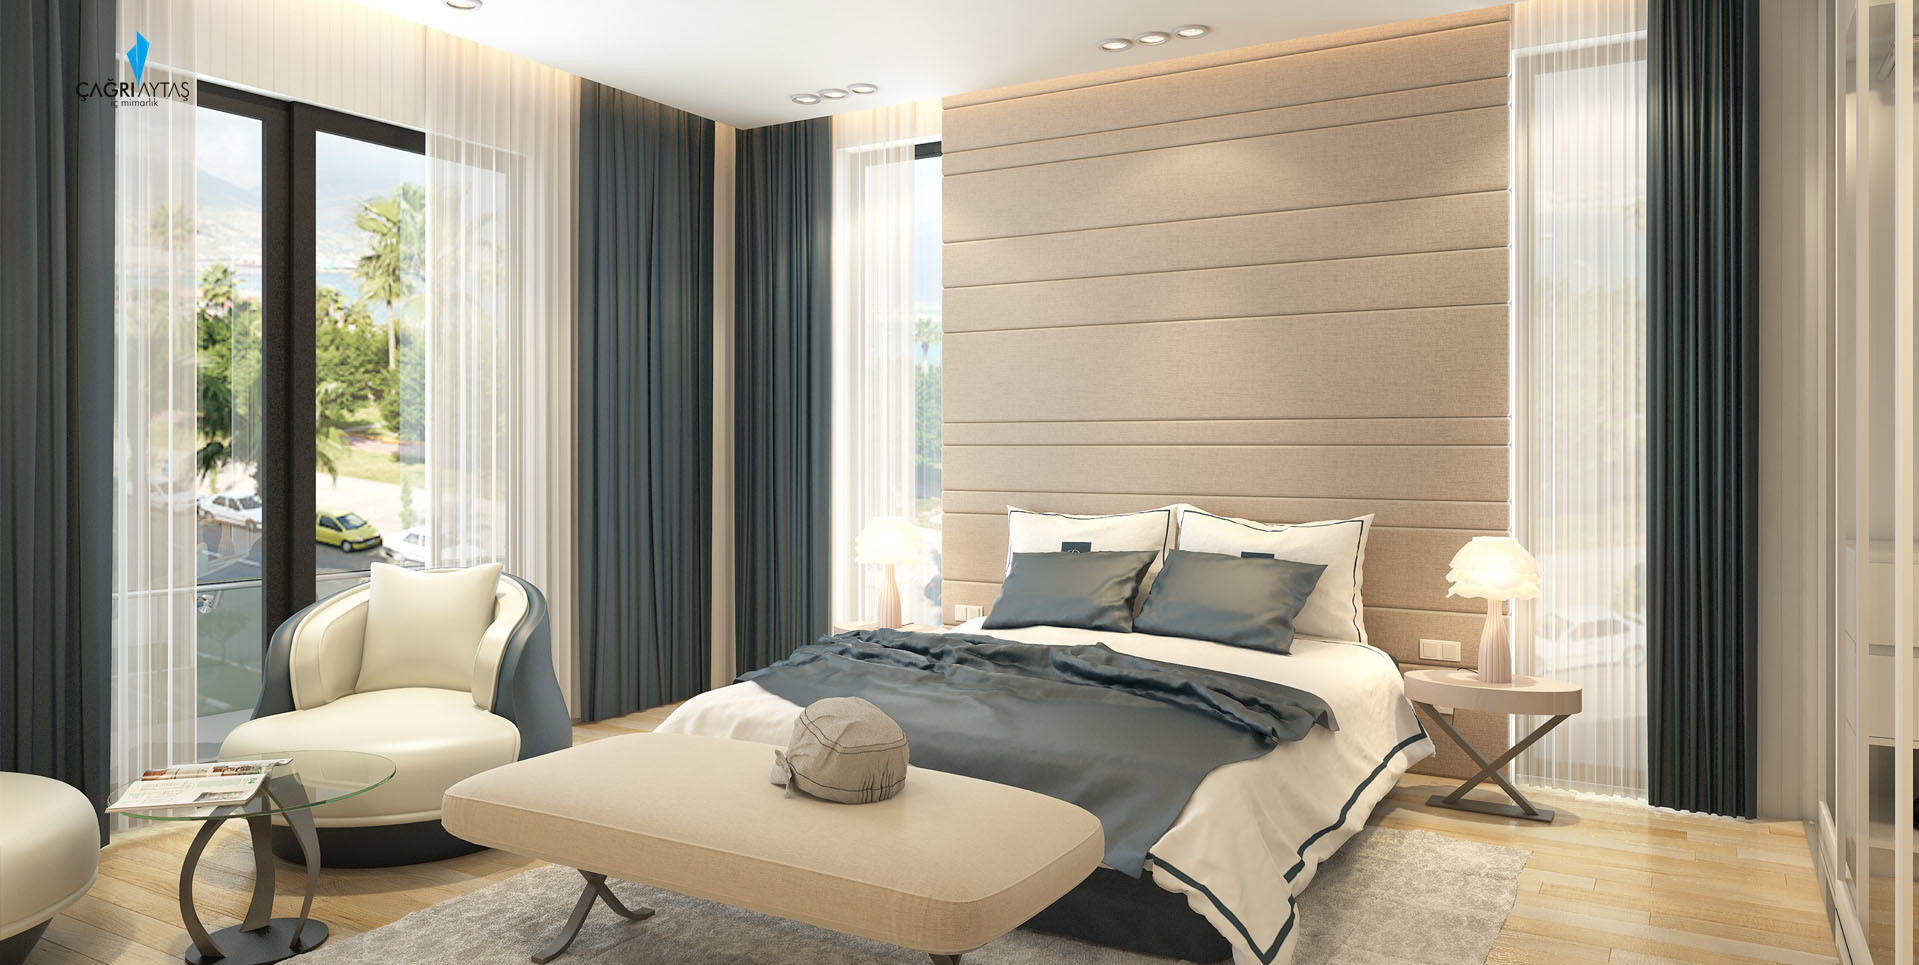 DE LIFE HOMES, Çağrı Aytaş İç Mimarlık İnşaat Çağrı Aytaş İç Mimarlık İnşaat Modern Bedroom